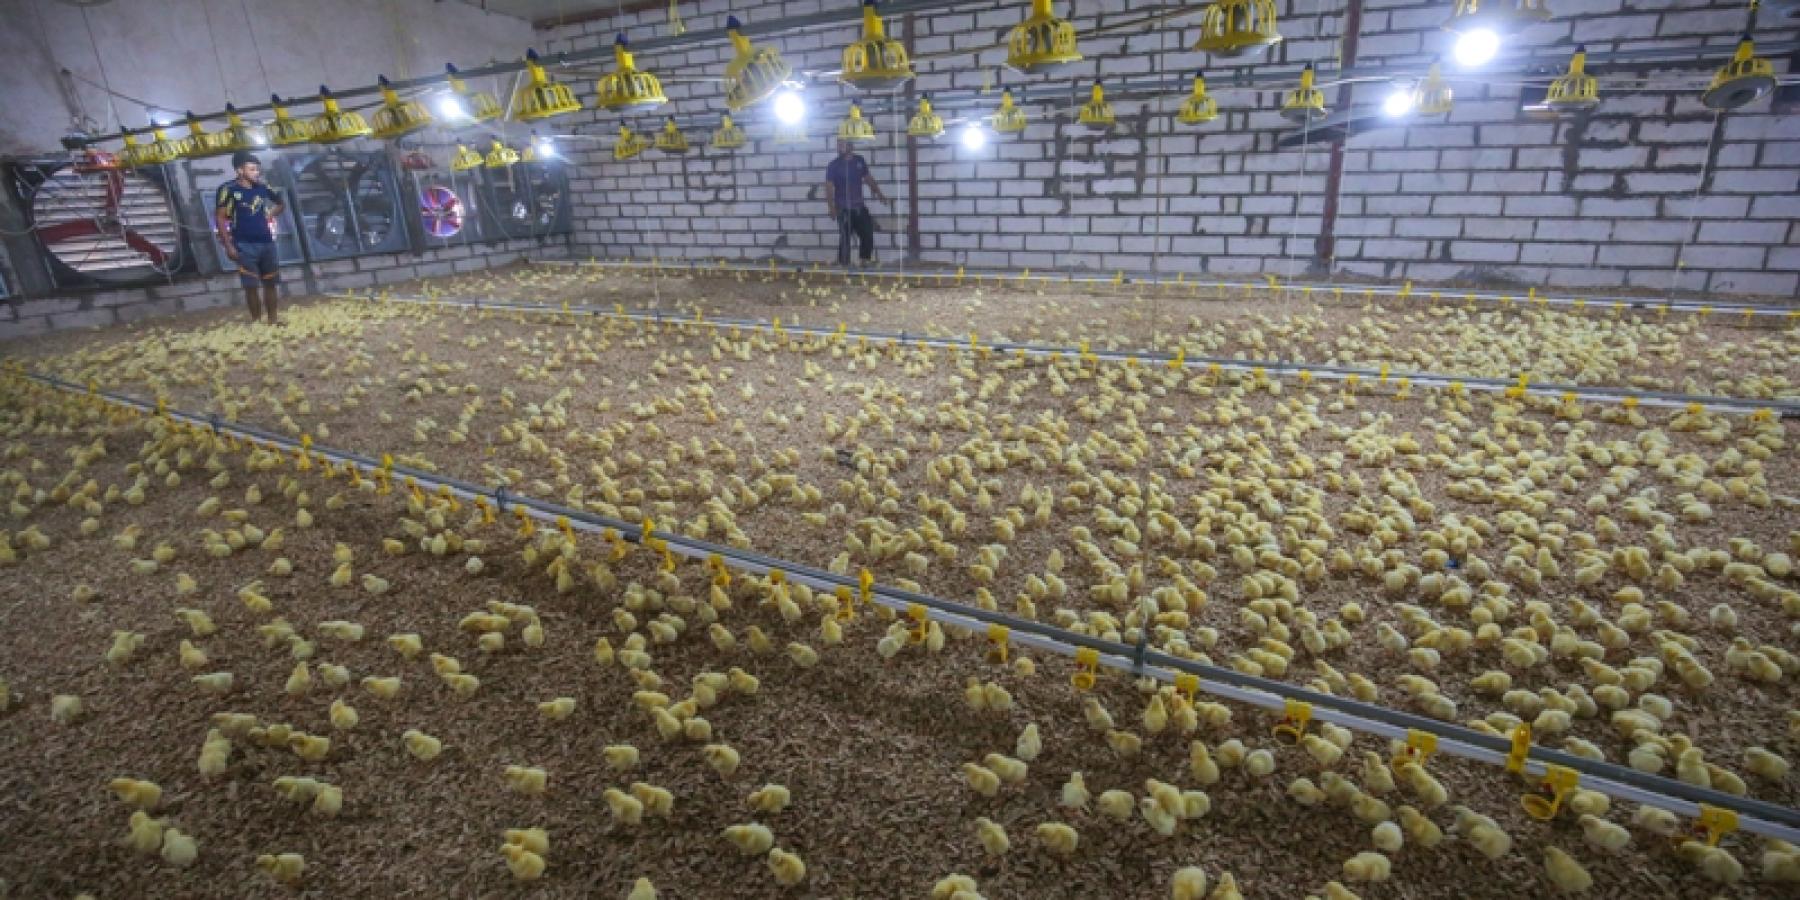 شركة فيض القسيم التابعة إلى العتبة العلوية المقدسة تجهز حقول الدواجن بــ(35) ألف فرخ دجاج